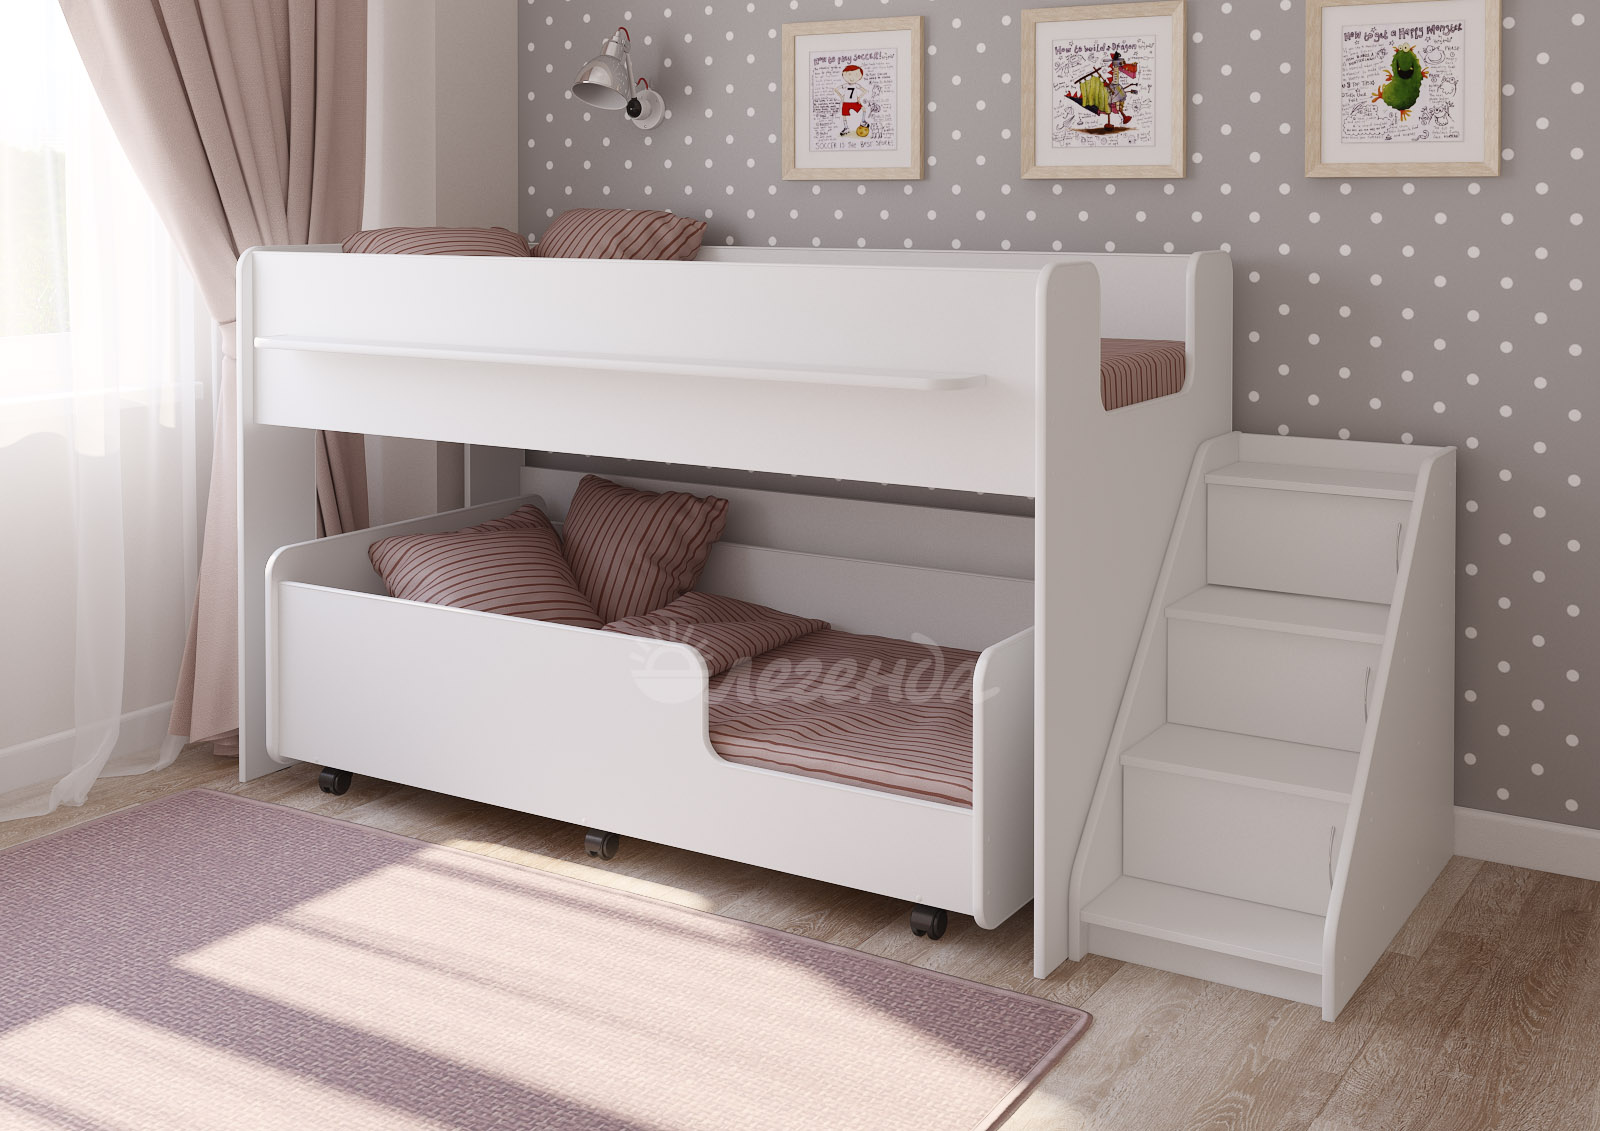 Детские двухъярусные кровати в интернет-магазине MnogoDivanov.ru от 8950 руб.